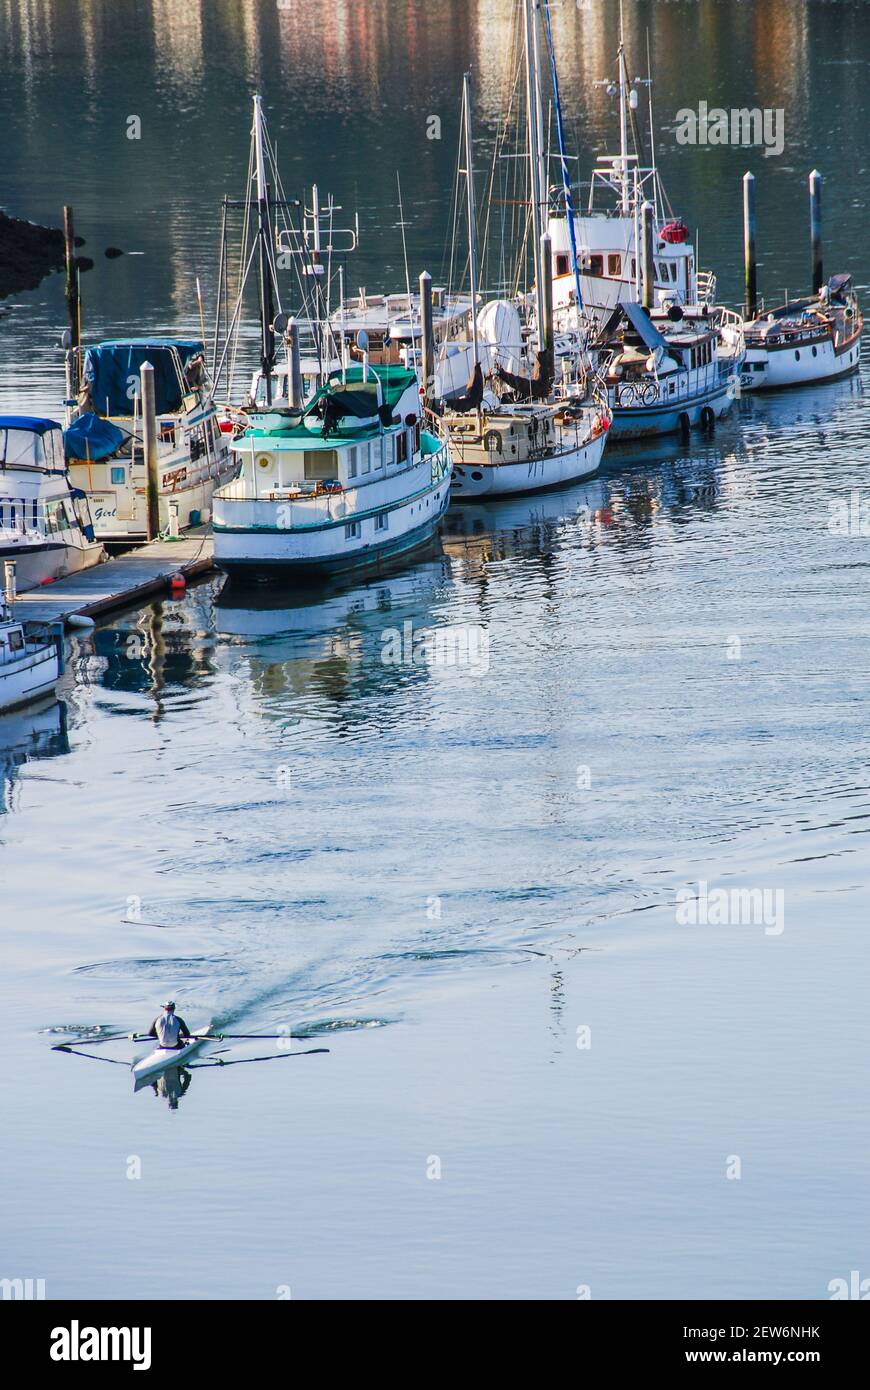 La Conner, Washington, 25 de octubre de 2008. Un hombre remando una sola concha de carreras de gaviota con remos en movimiento. Atracó barcos amarrados en el fondo. Foto de stock